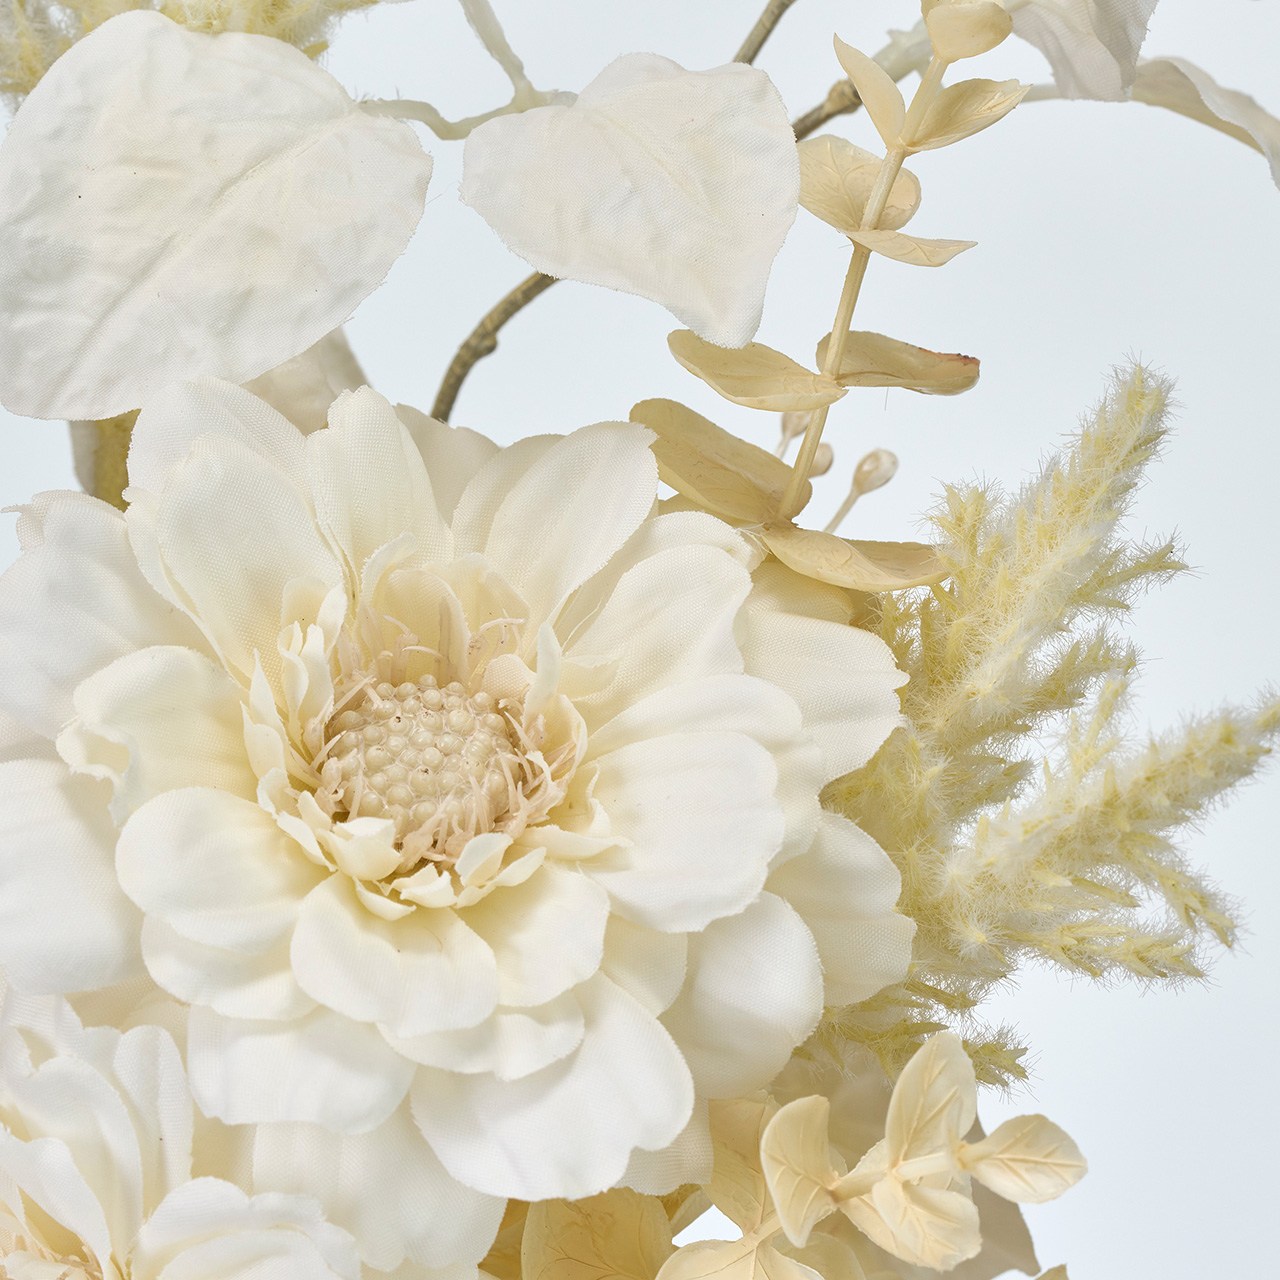 マイフラ】 通販/MAGIQ ブランジニアブーケ ホワイト アーティフィシャルフラワー 造花 マム 菊 FM008729(長さ 約58×幅 約25cm  ホワイト): MAGIQ(アーティフィシャルフラワー 造花)/全国にMAGIQ、花器、花資材などをお届けします。